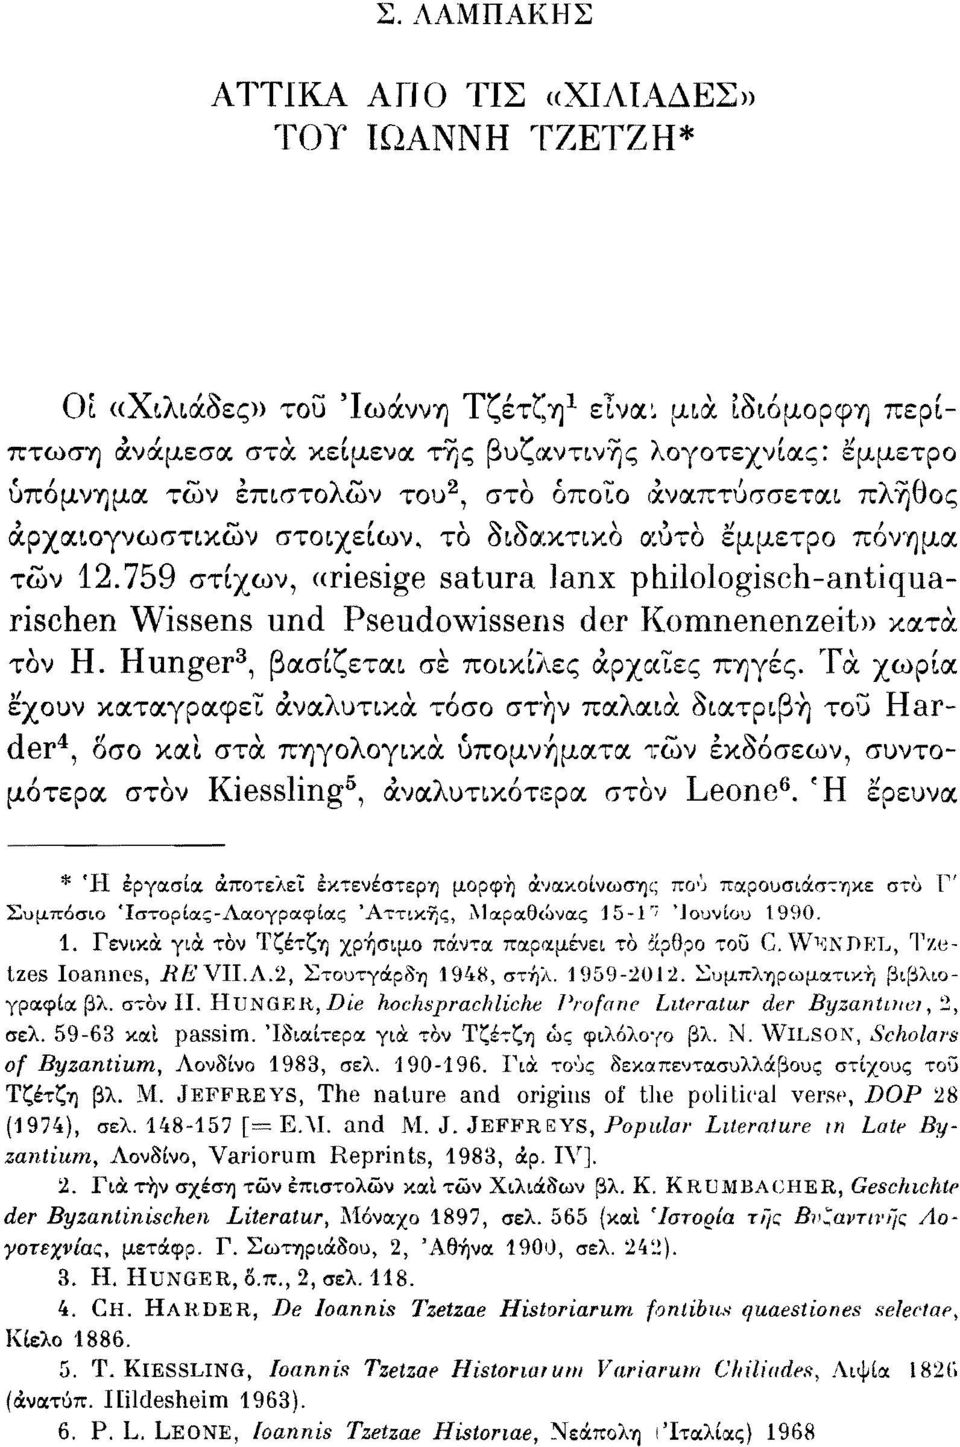 τών 12.759 στίχων, «riesige satura lanx philologisch-antiquarischen Wissens und Pseudowissens der Komnenenzeit» κατά τον Η. Hunger 3, βασίζεται σε ποικίλες αρχαίες πηγές.